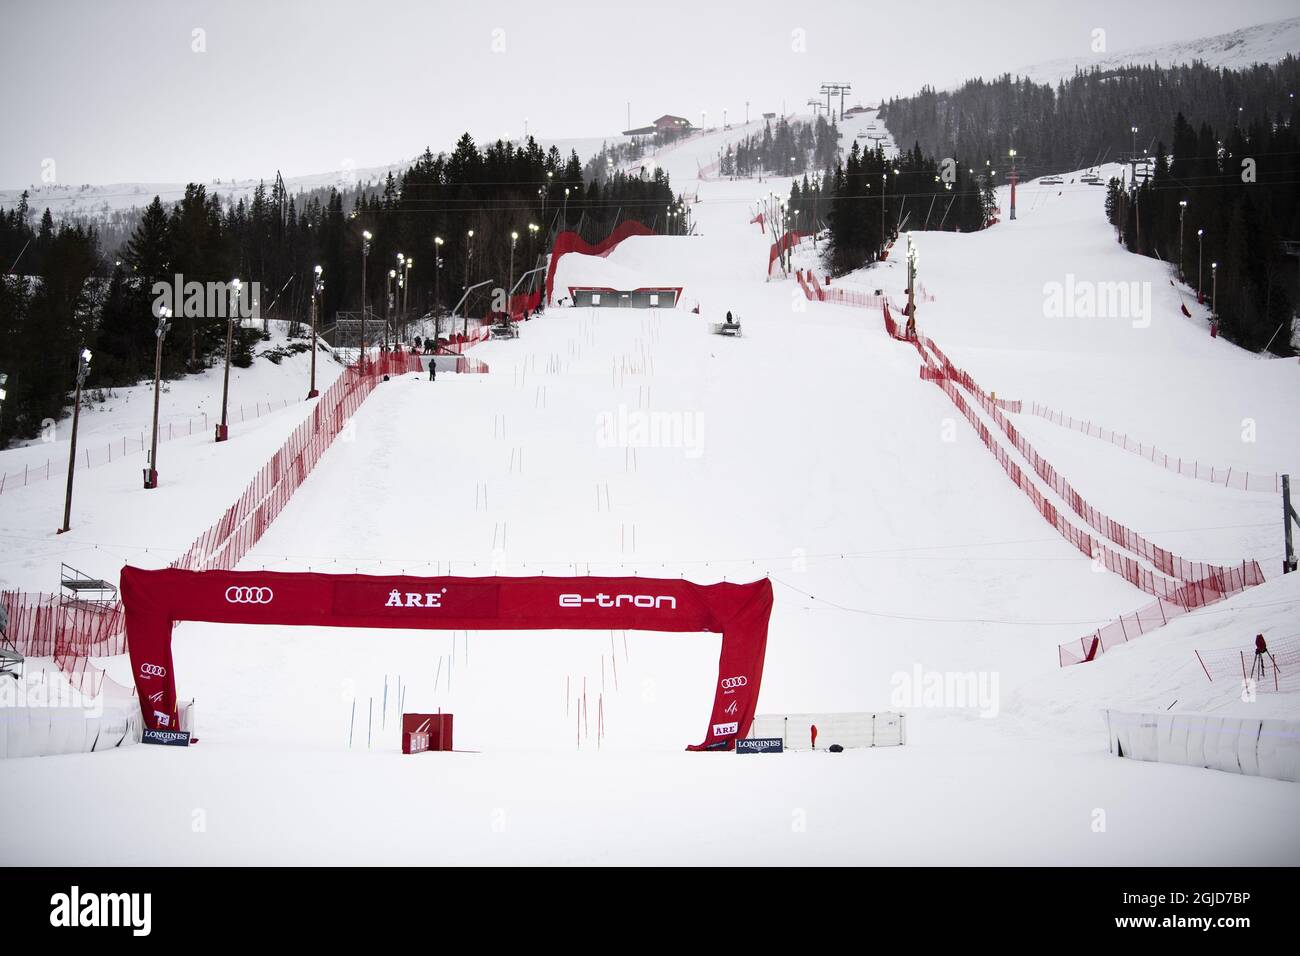 Vue sur la pente de la station de ski de are, dans le nord de la Suède, le 11 mars 2020. Selon les organisateurs, la finale de la coupe du monde de ski alpin en fin de semaine a été annulée en raison de la préoccupation du coronavirus. L'Agence suédoise de la santé publique a demandé mercredi au gouvernement d'interdire temporairement les événements de plus de 500 personnes. Photo: Pontus Lundahl / TT / code 10050 Banque D'Images